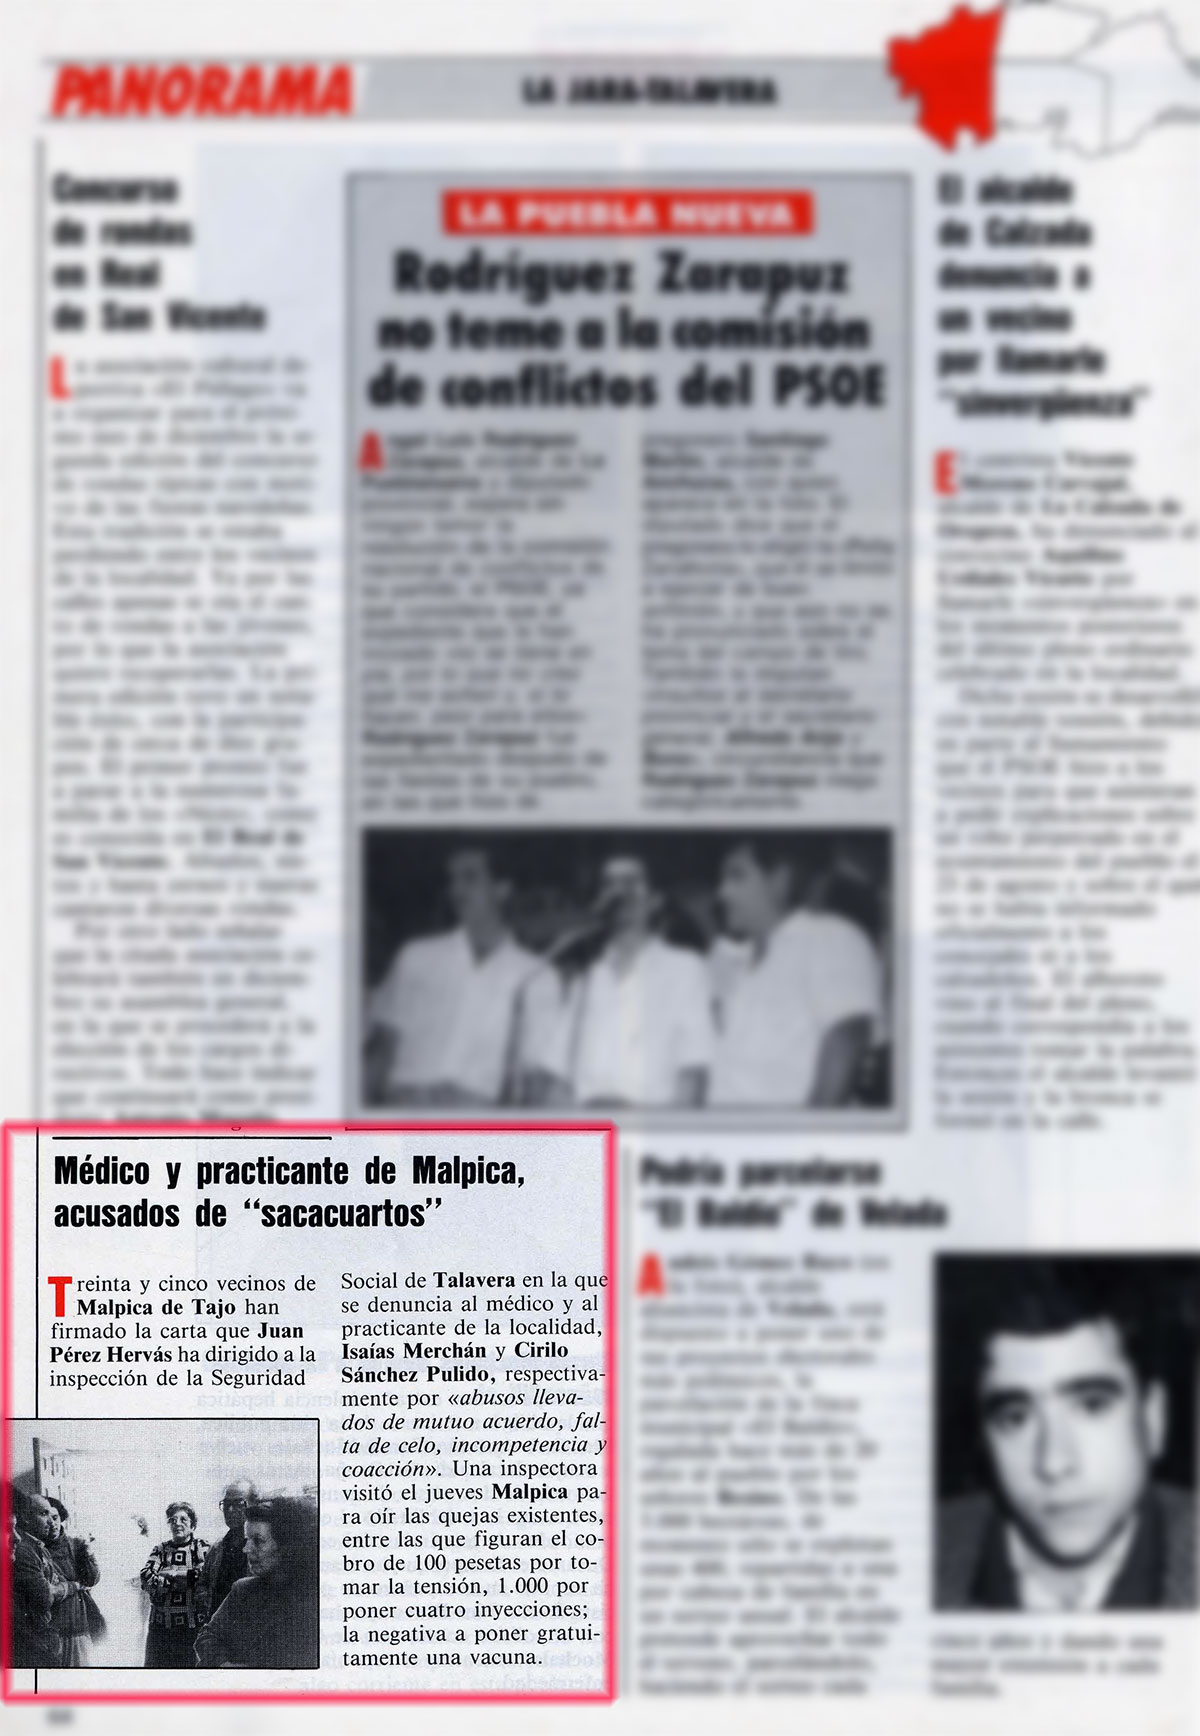 El médico y practicante de Malpica de Tajo acusados de "sacacuartos". Bisagra. N.º 53, 7-13/11/1988